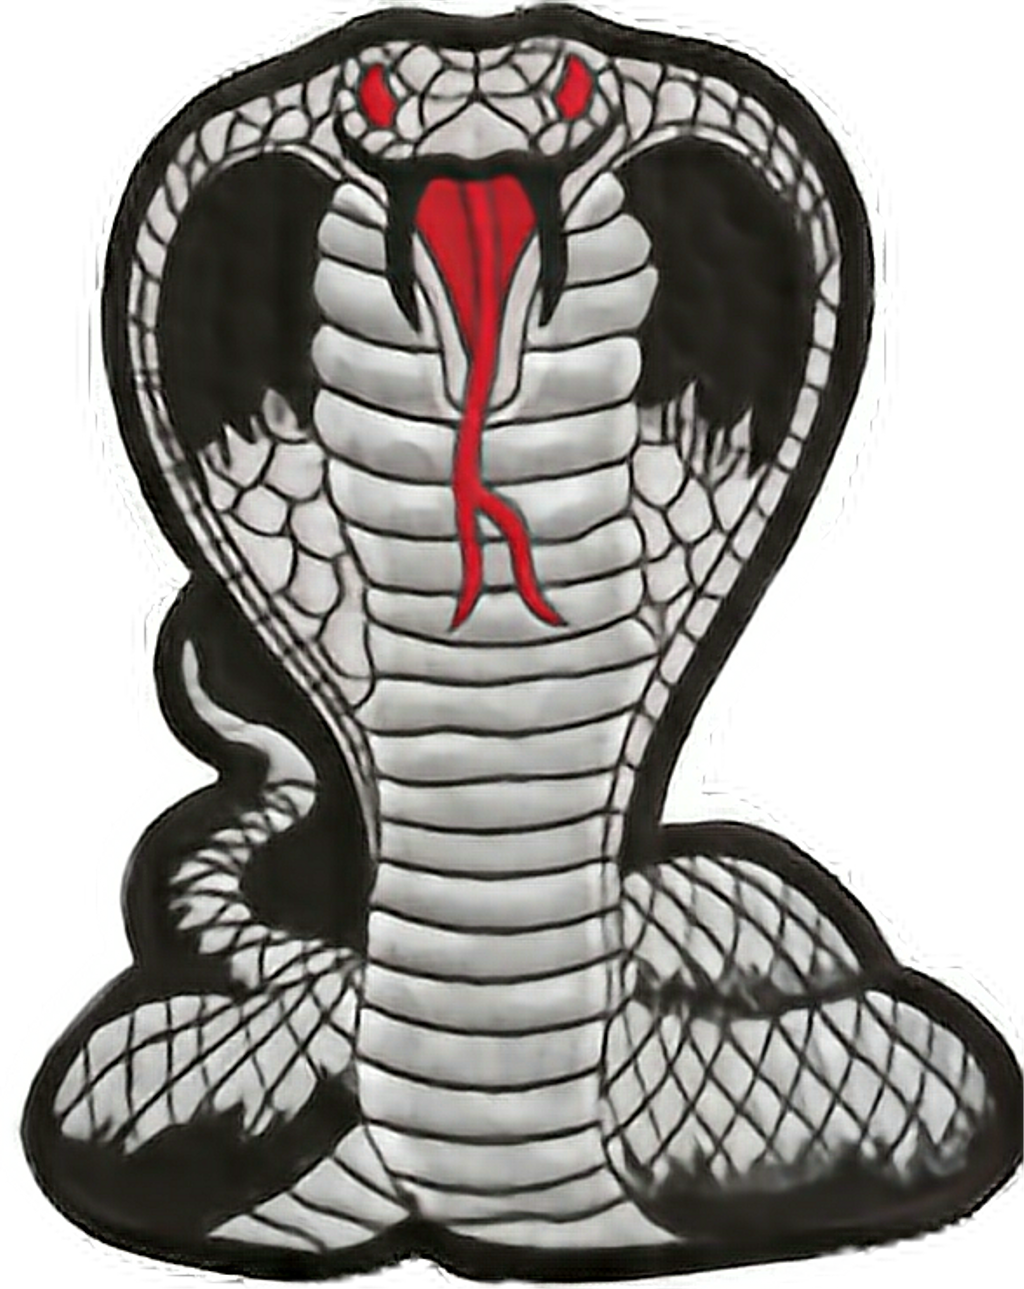 King Cobra Cartoon Illustration